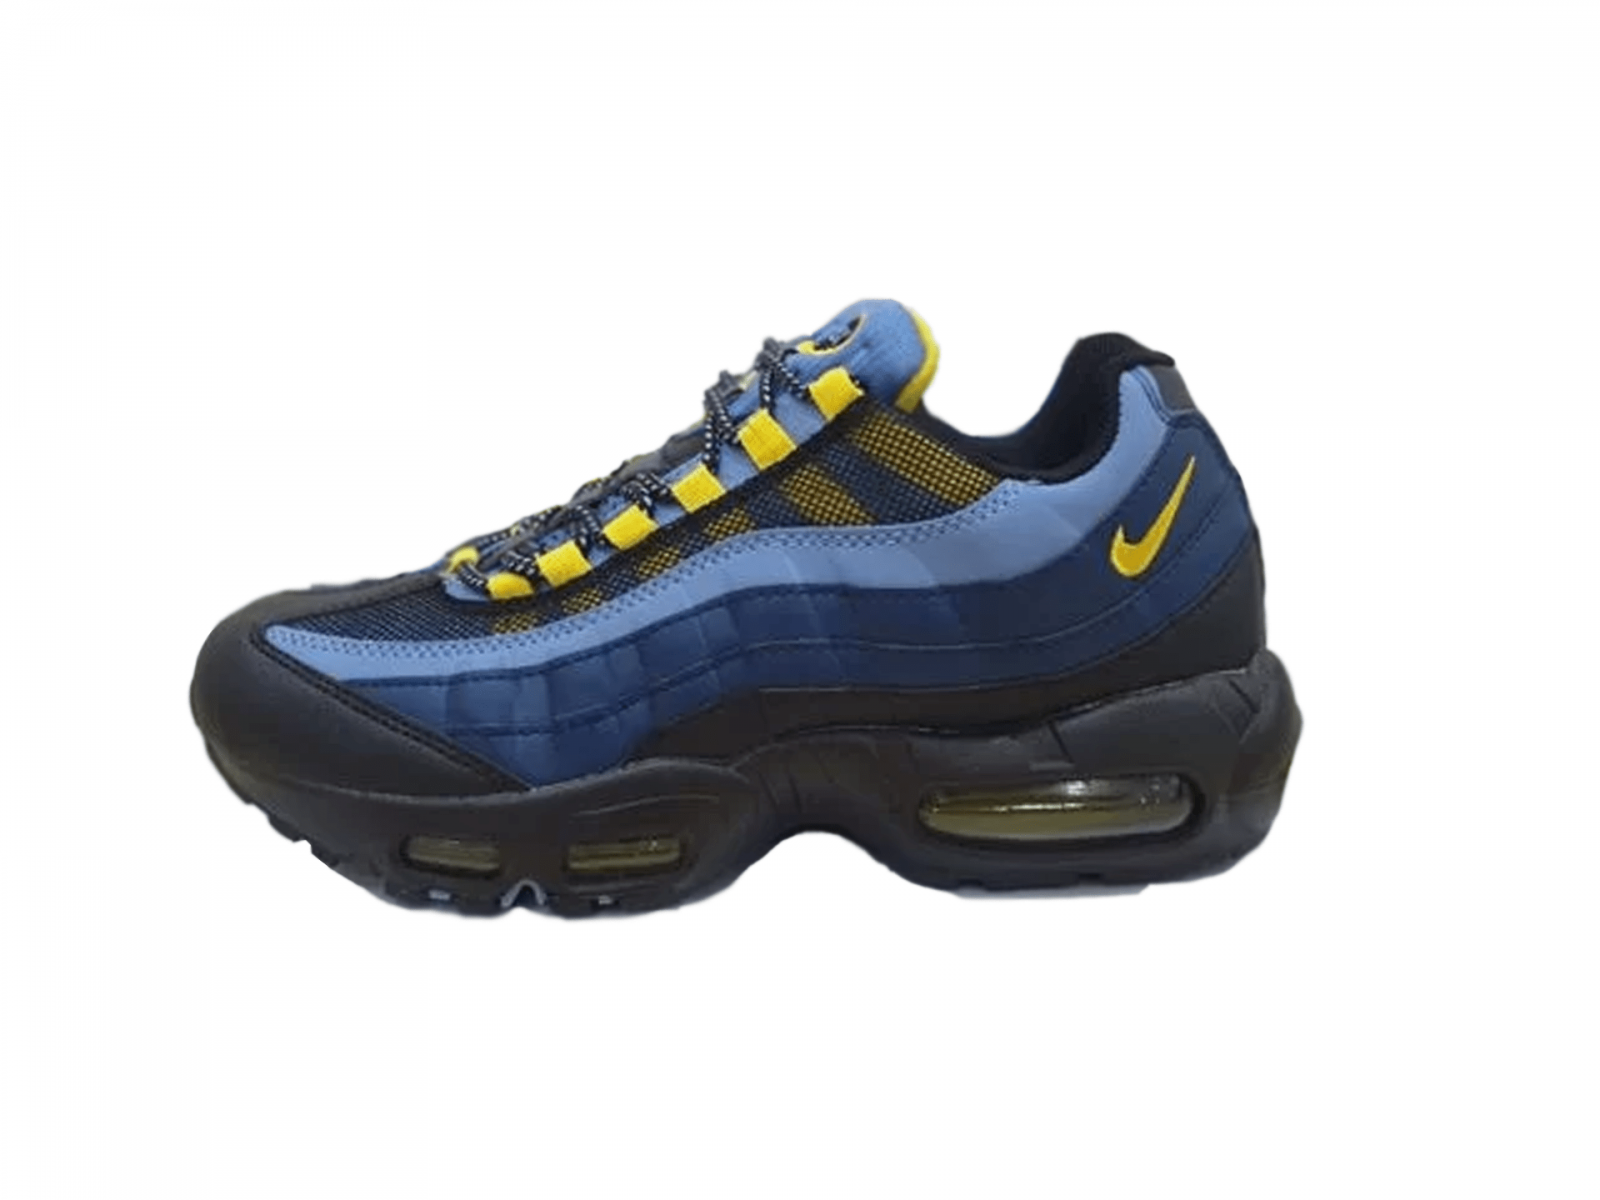 Nike Air Max 95 синие с черным и желтым, нейлон, текстиль, кожа, мужские